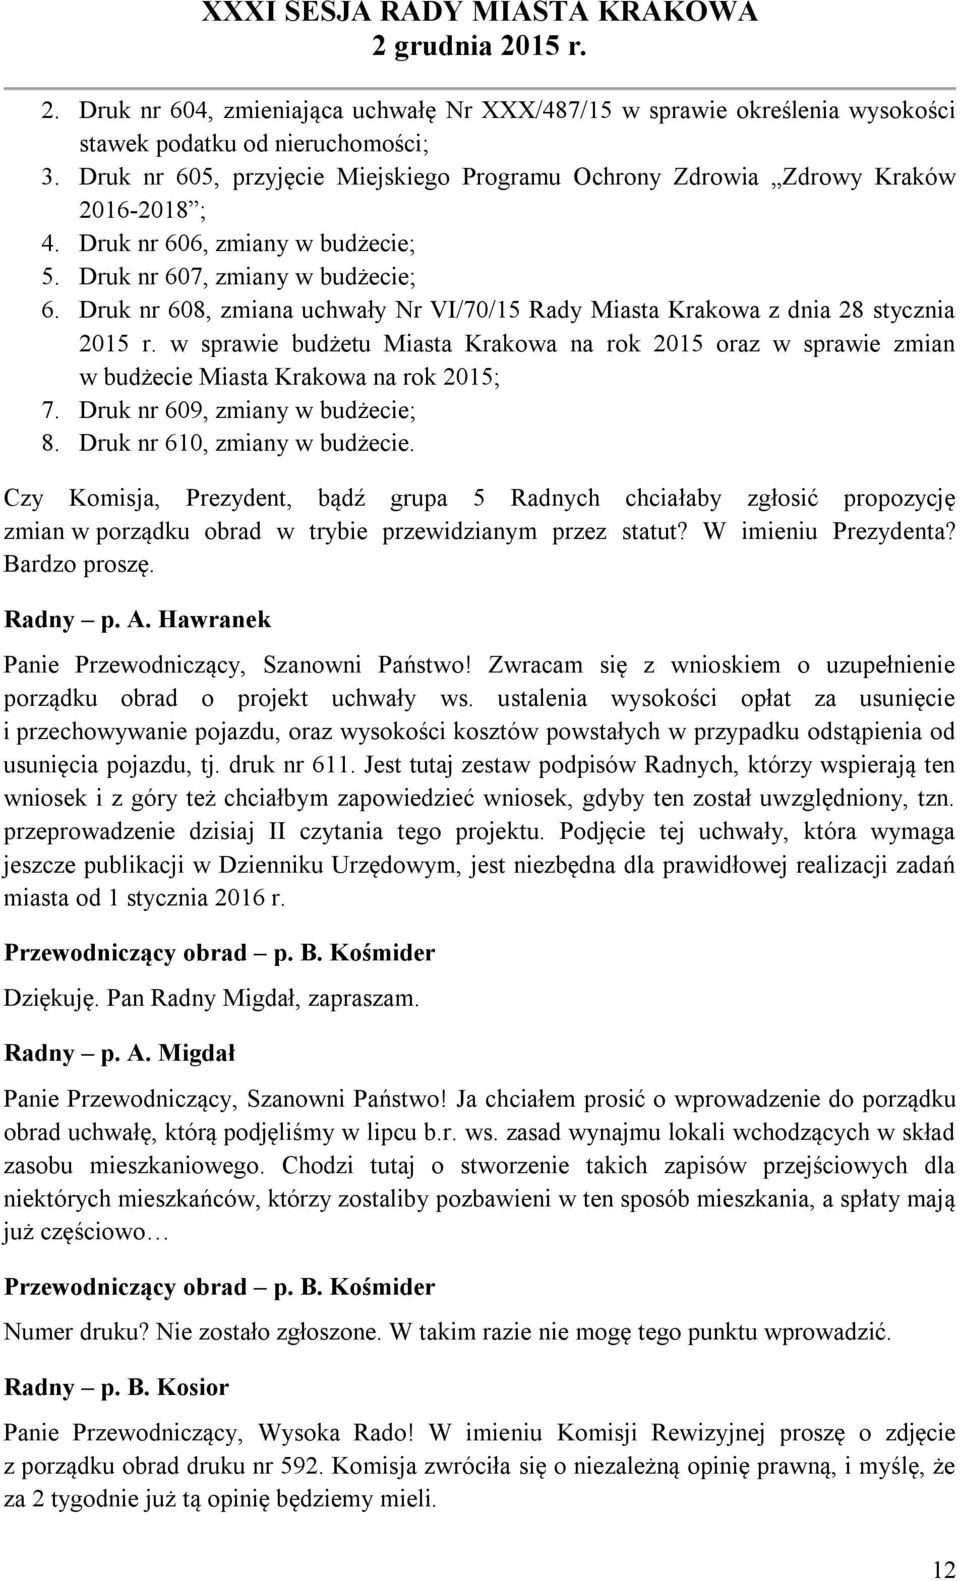 Druk nr 608, zmiana uchwały Nr VI/70/15 Rady Miasta Krakowa z dnia 28 stycznia 2015 r. w sprawie budżetu Miasta Krakowa na rok 2015 oraz w sprawie zmian w budżecie Miasta Krakowa na rok 2015; 7.